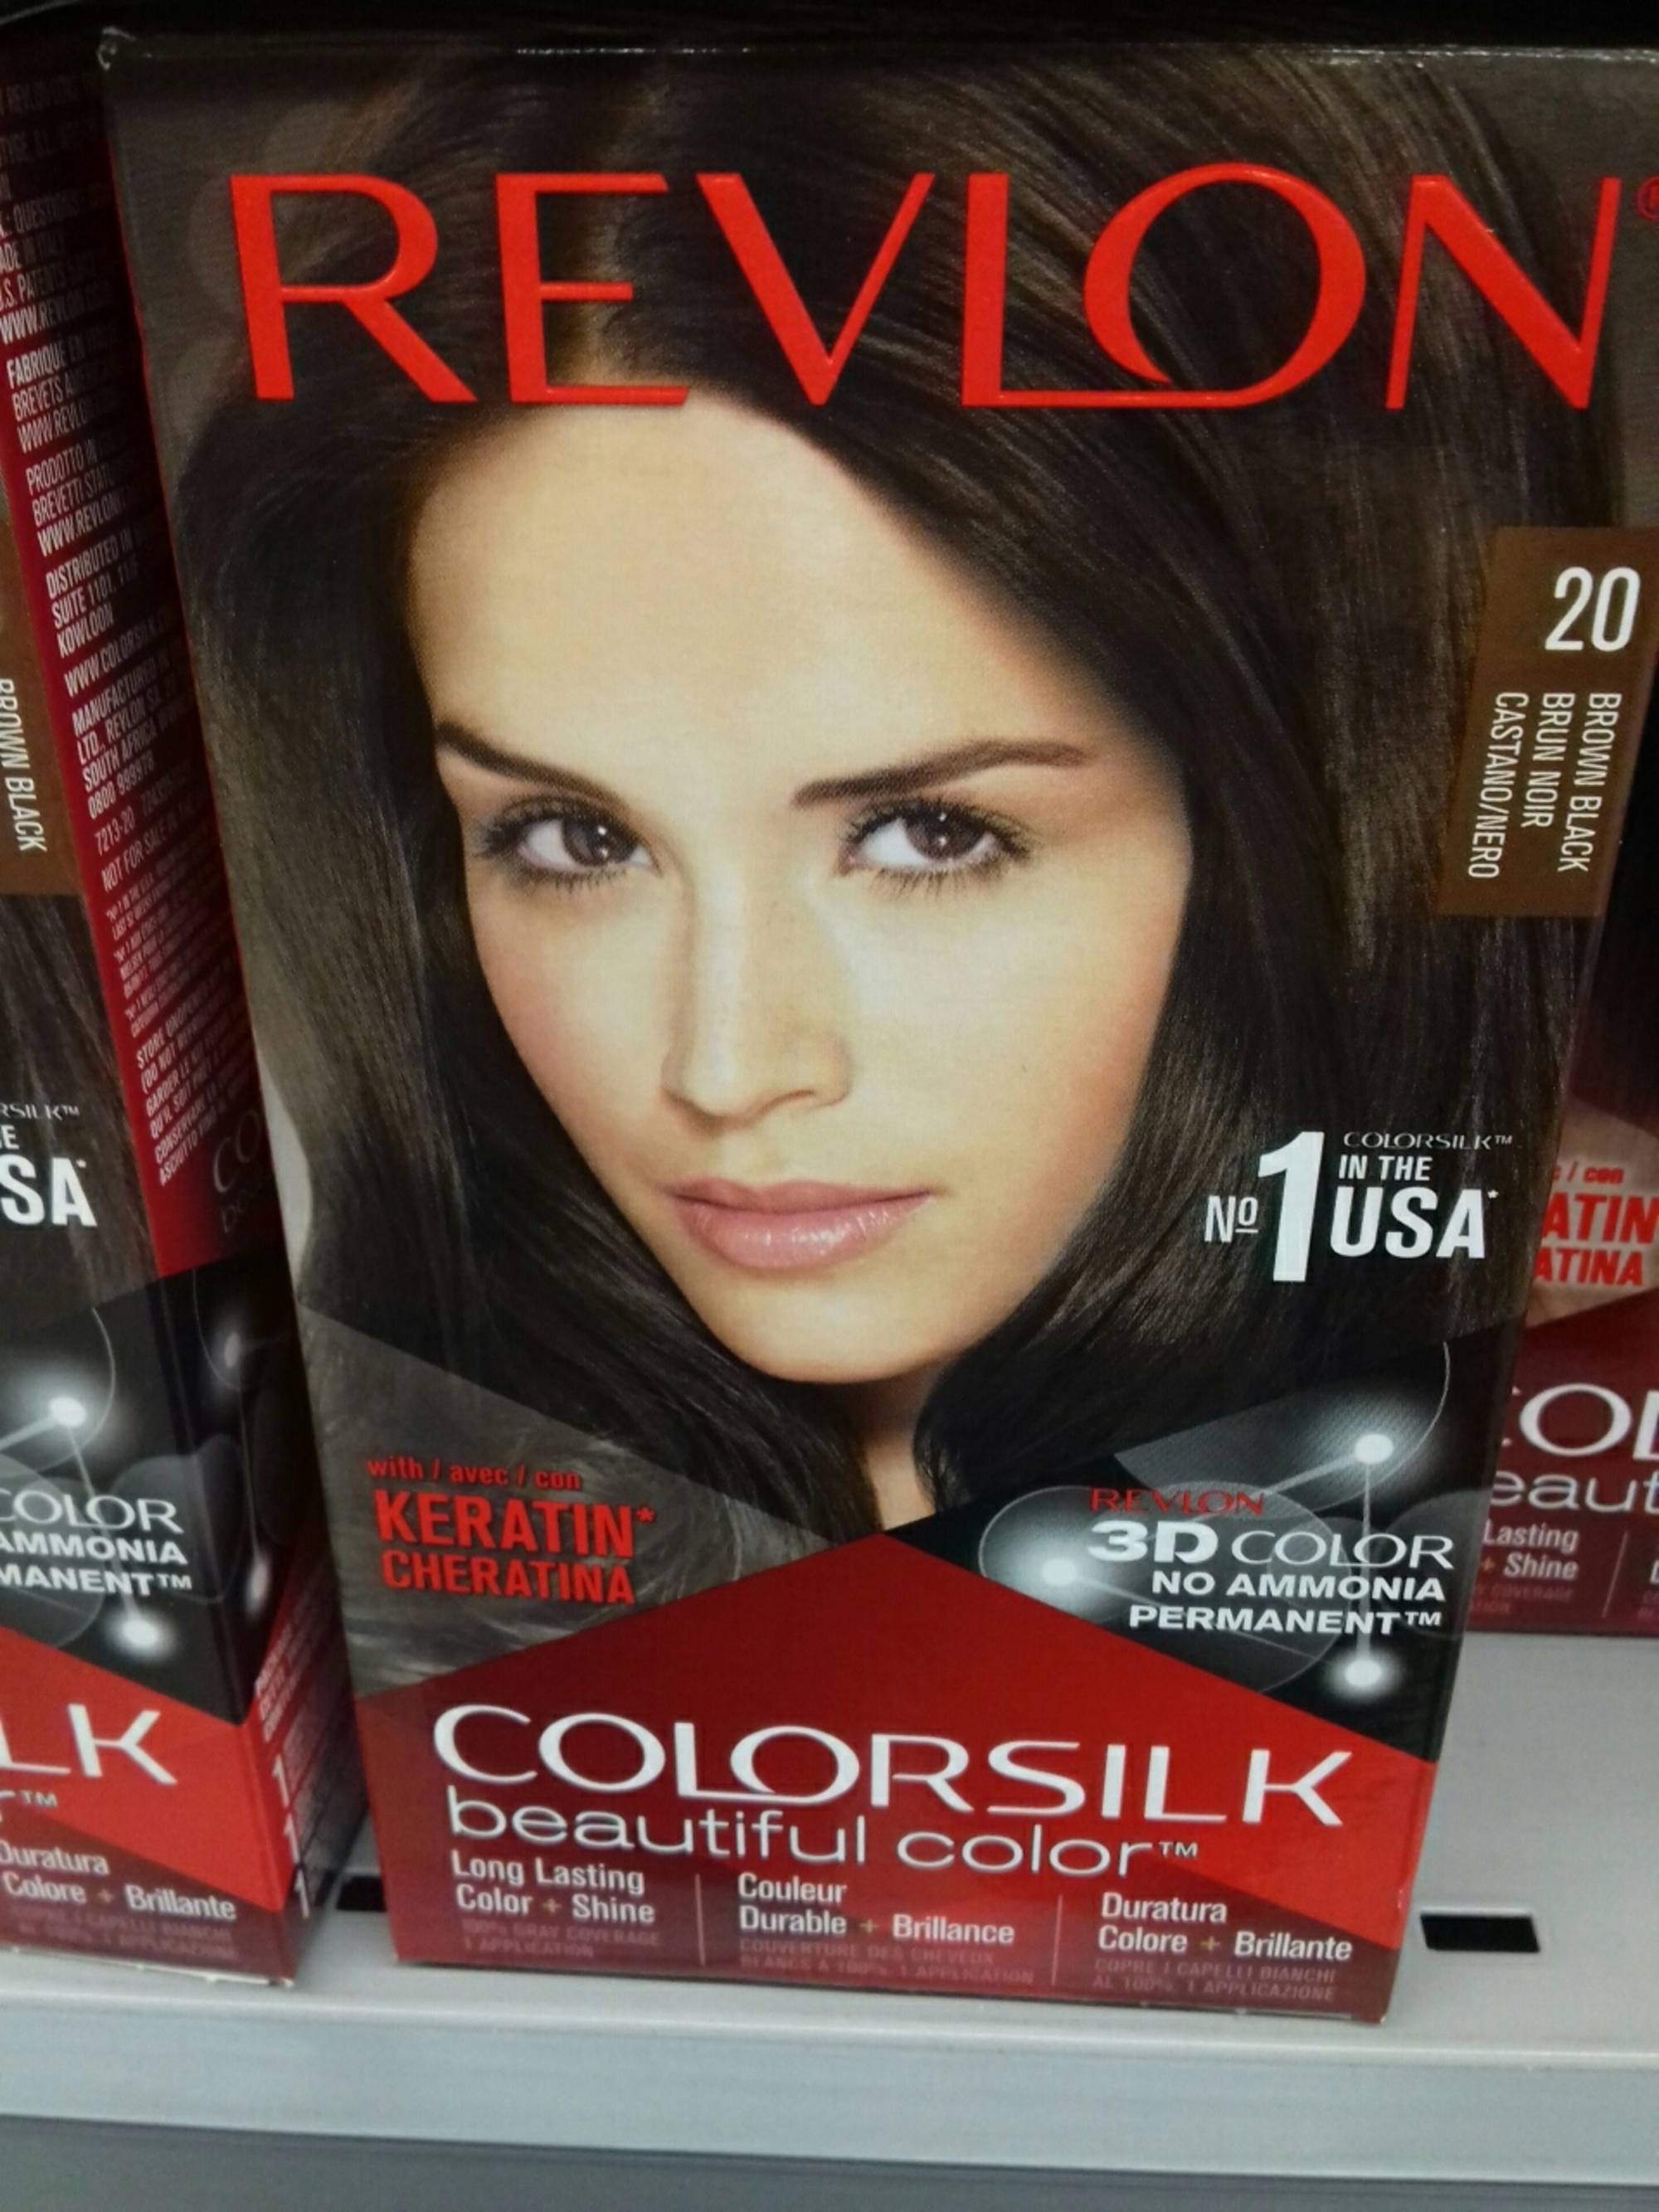 REVLON - Colorsilk - Beautiful color 20 brun noir